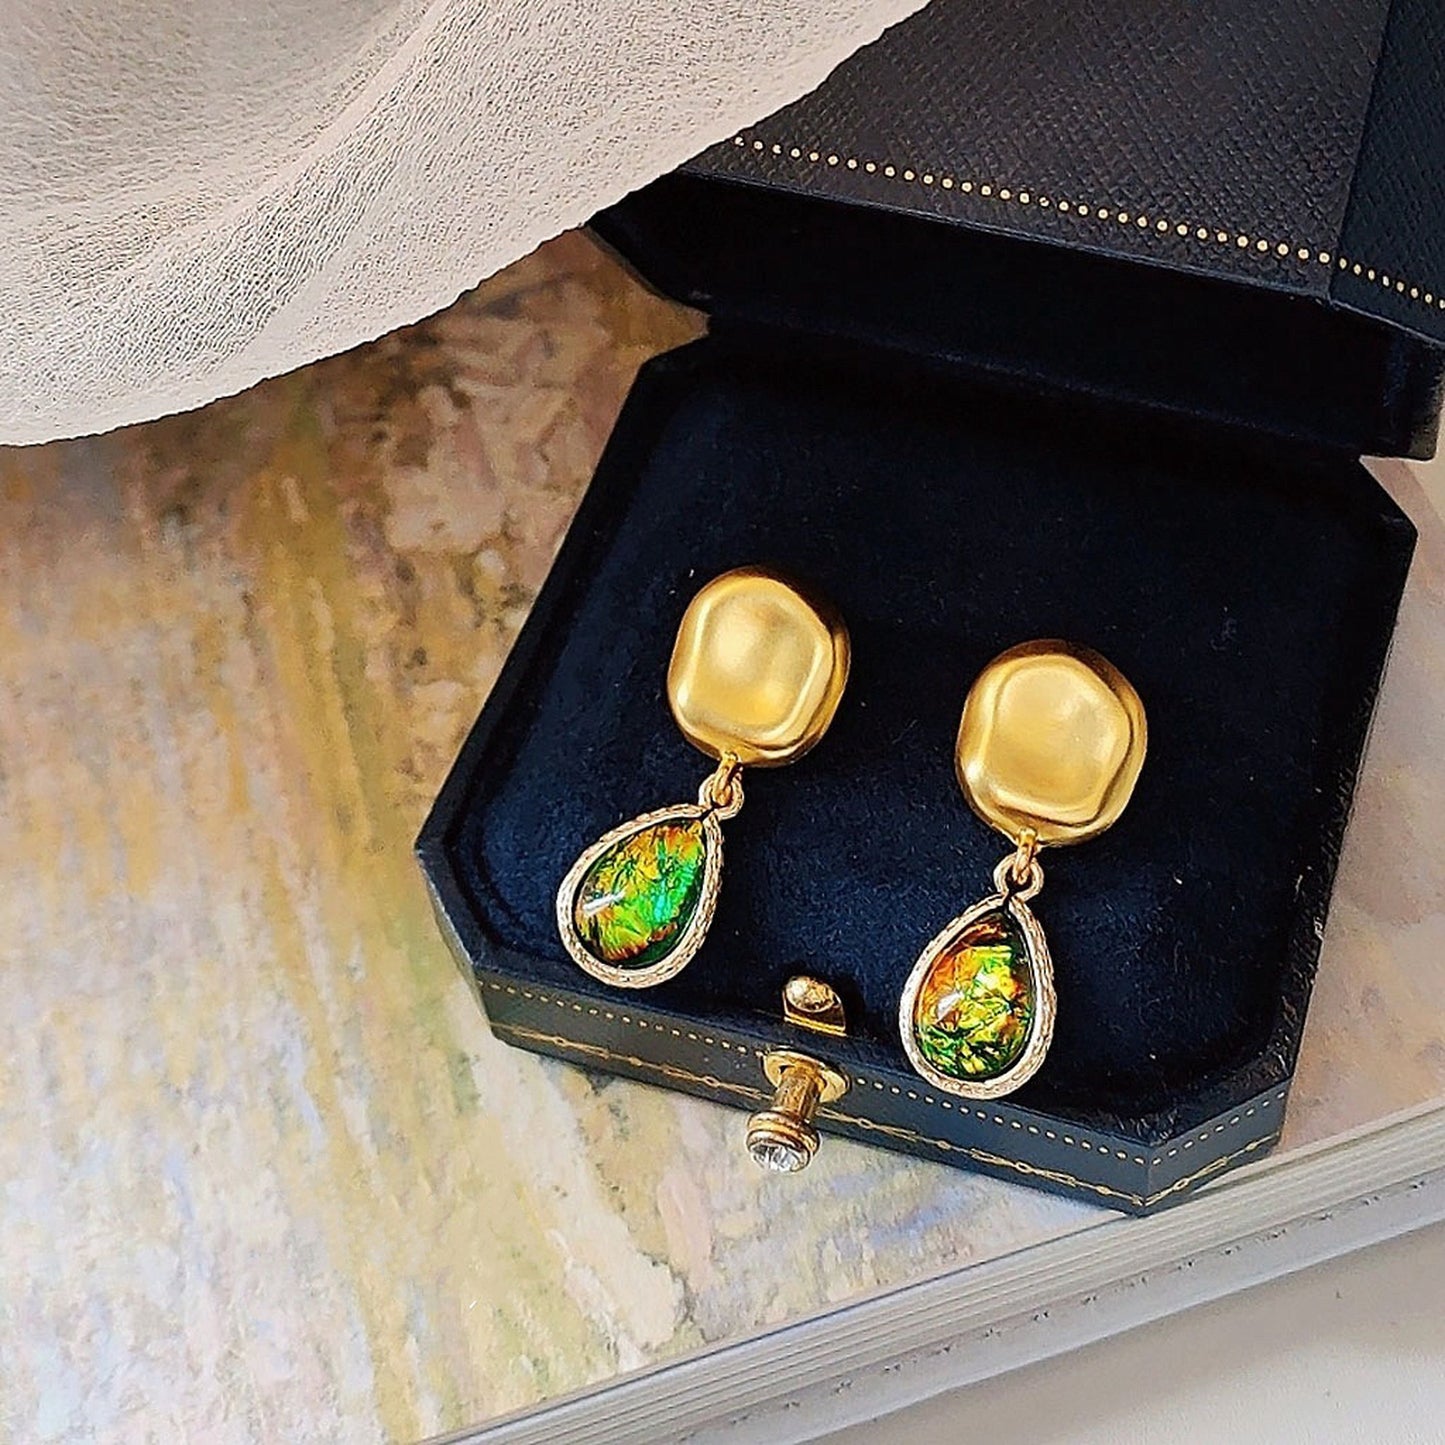 Vintage Style Teardrop Earrings, Green Earrings, Iridescent Jewelry, Shell Earrings, Antique Gold Earrings, Unique Earrings, Handmade Gifts